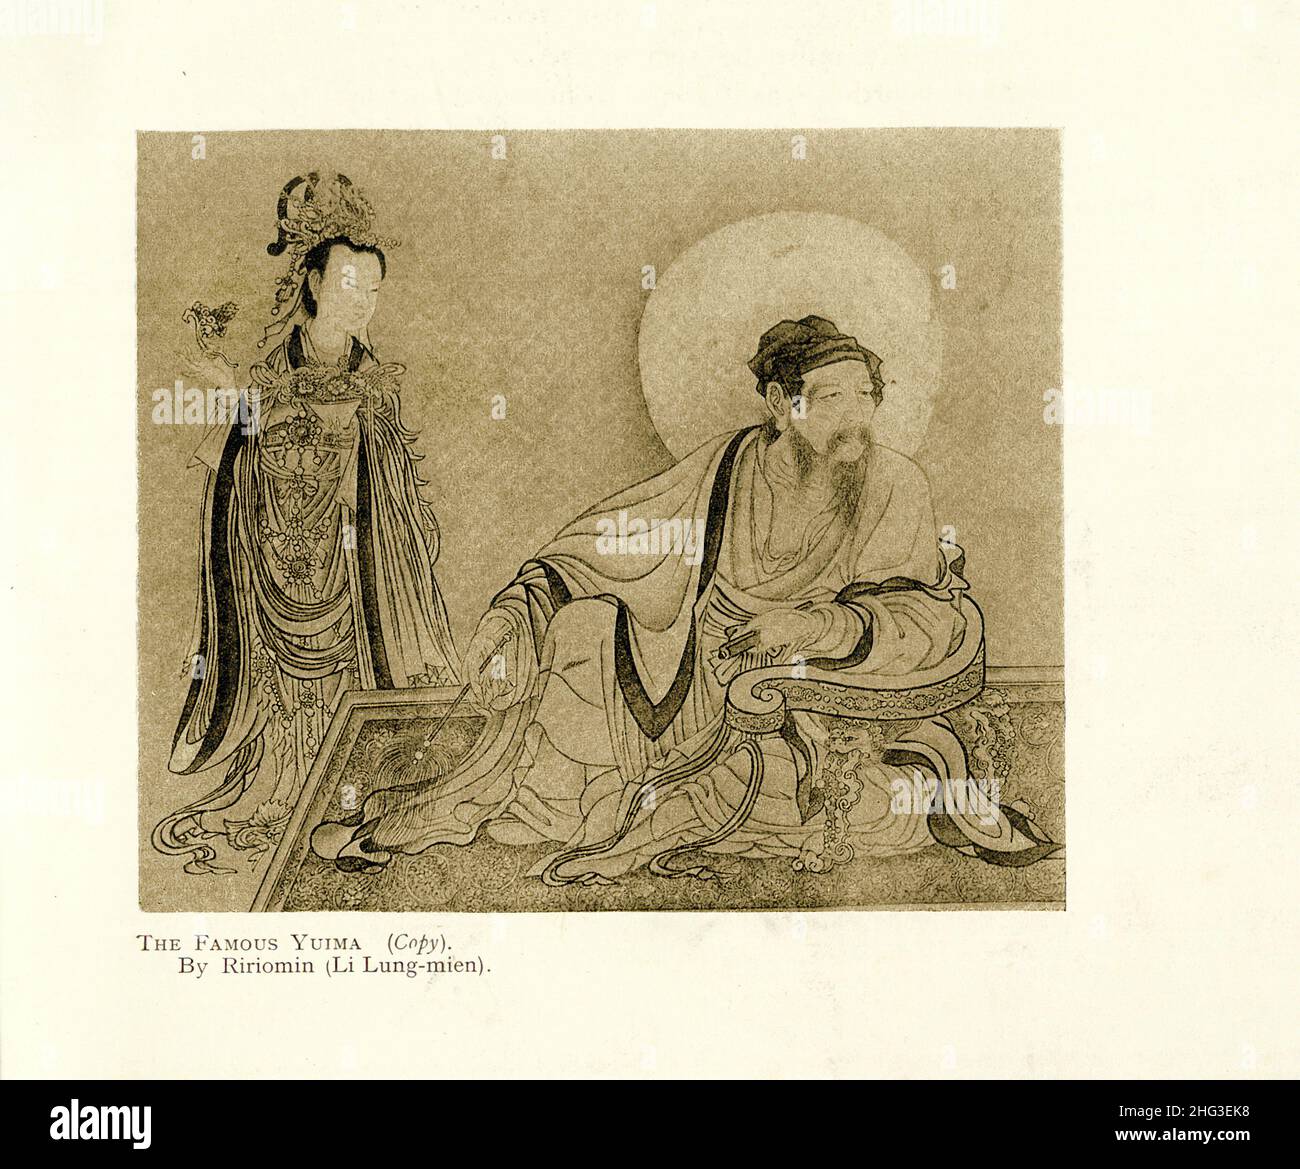 Pittura medievale cinese: La famosa Yuima (copia). Di Ririomin (li Lung-mien (1100-1106)). Riproduzione di un'illustrazione del libro di 1912 Foto Stock